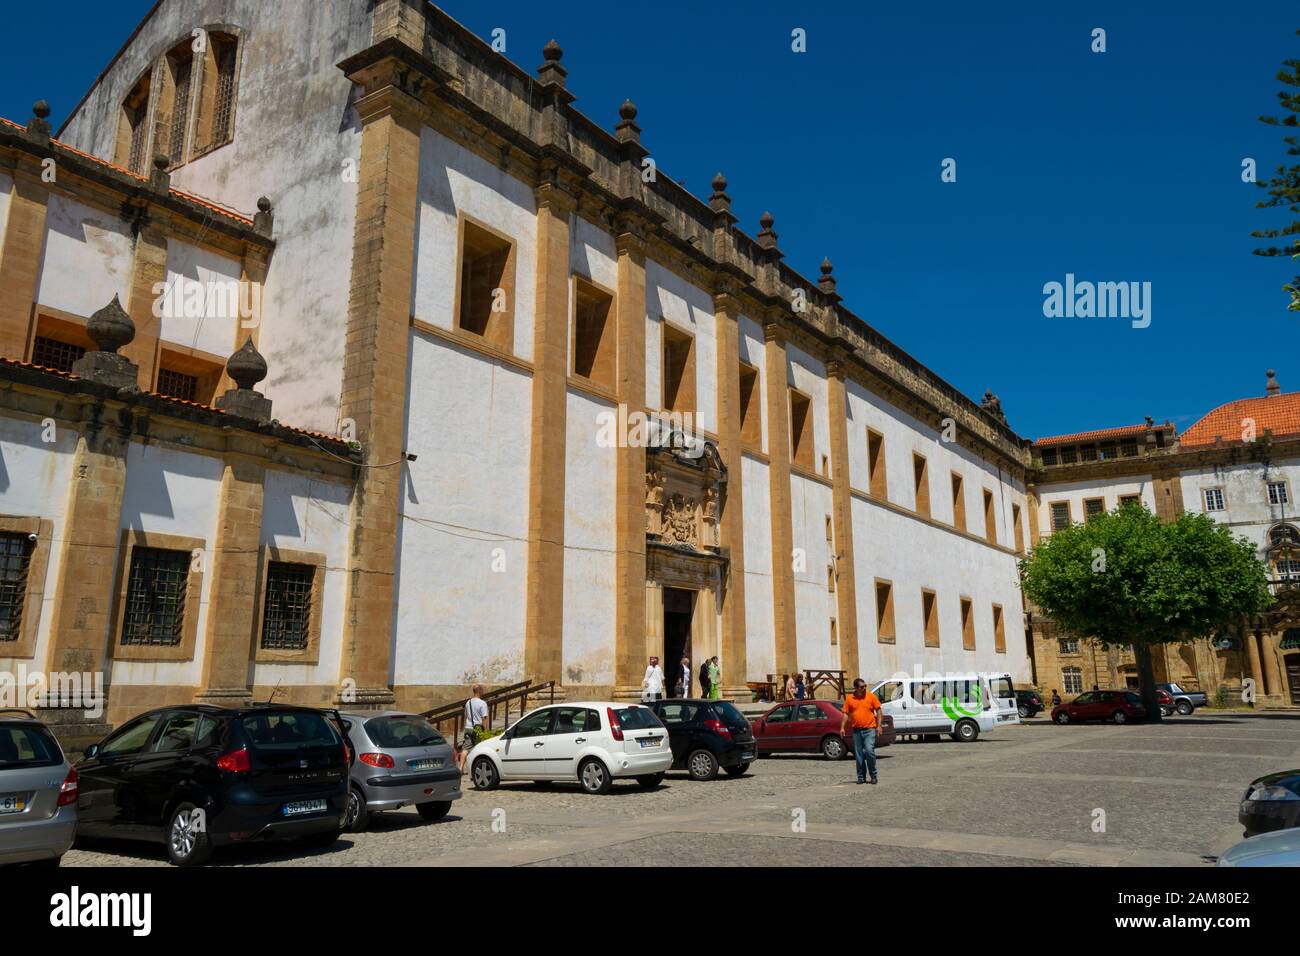 Mosteiro de Santa Clara-a-Nova in Coimbra Portugal Stock Photo